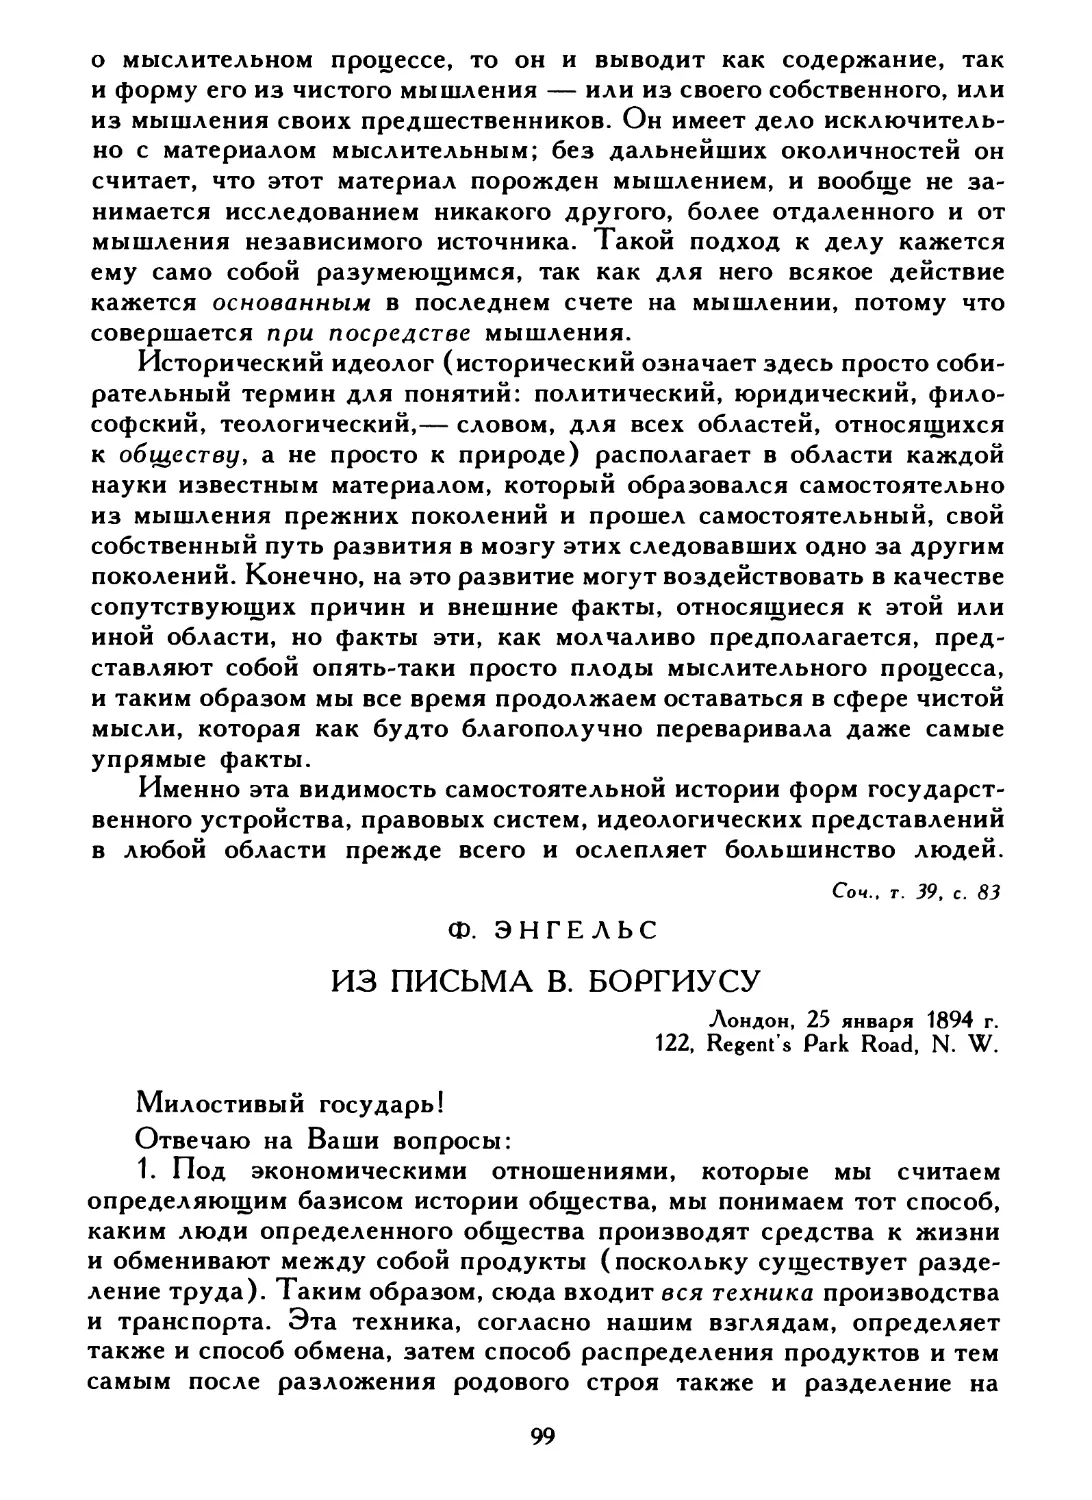 Ф. Энгельс. Из письма В. Боргиусу, 25 января 1894 г.